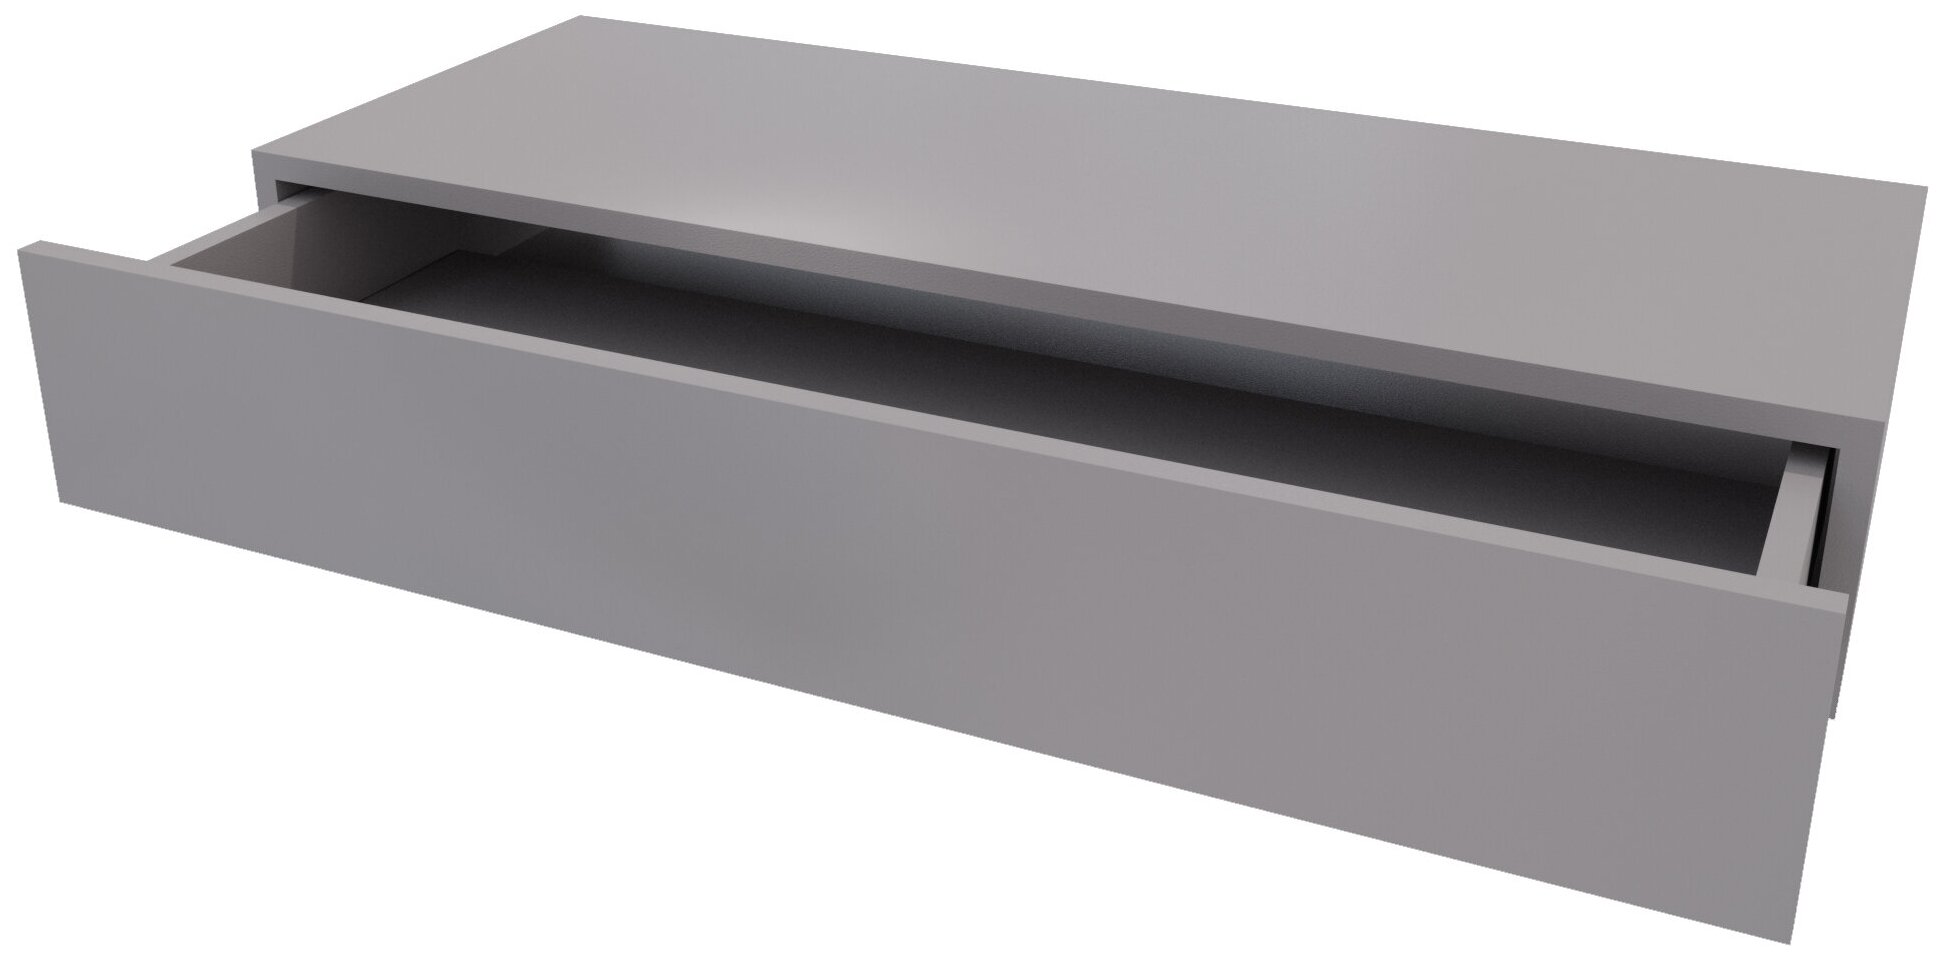 Туалетный столик, консоль для прихожей, цвет тёмно-серый, ящик с доводчиком, модель Чикаго, 90х35х15 см - фотография № 3